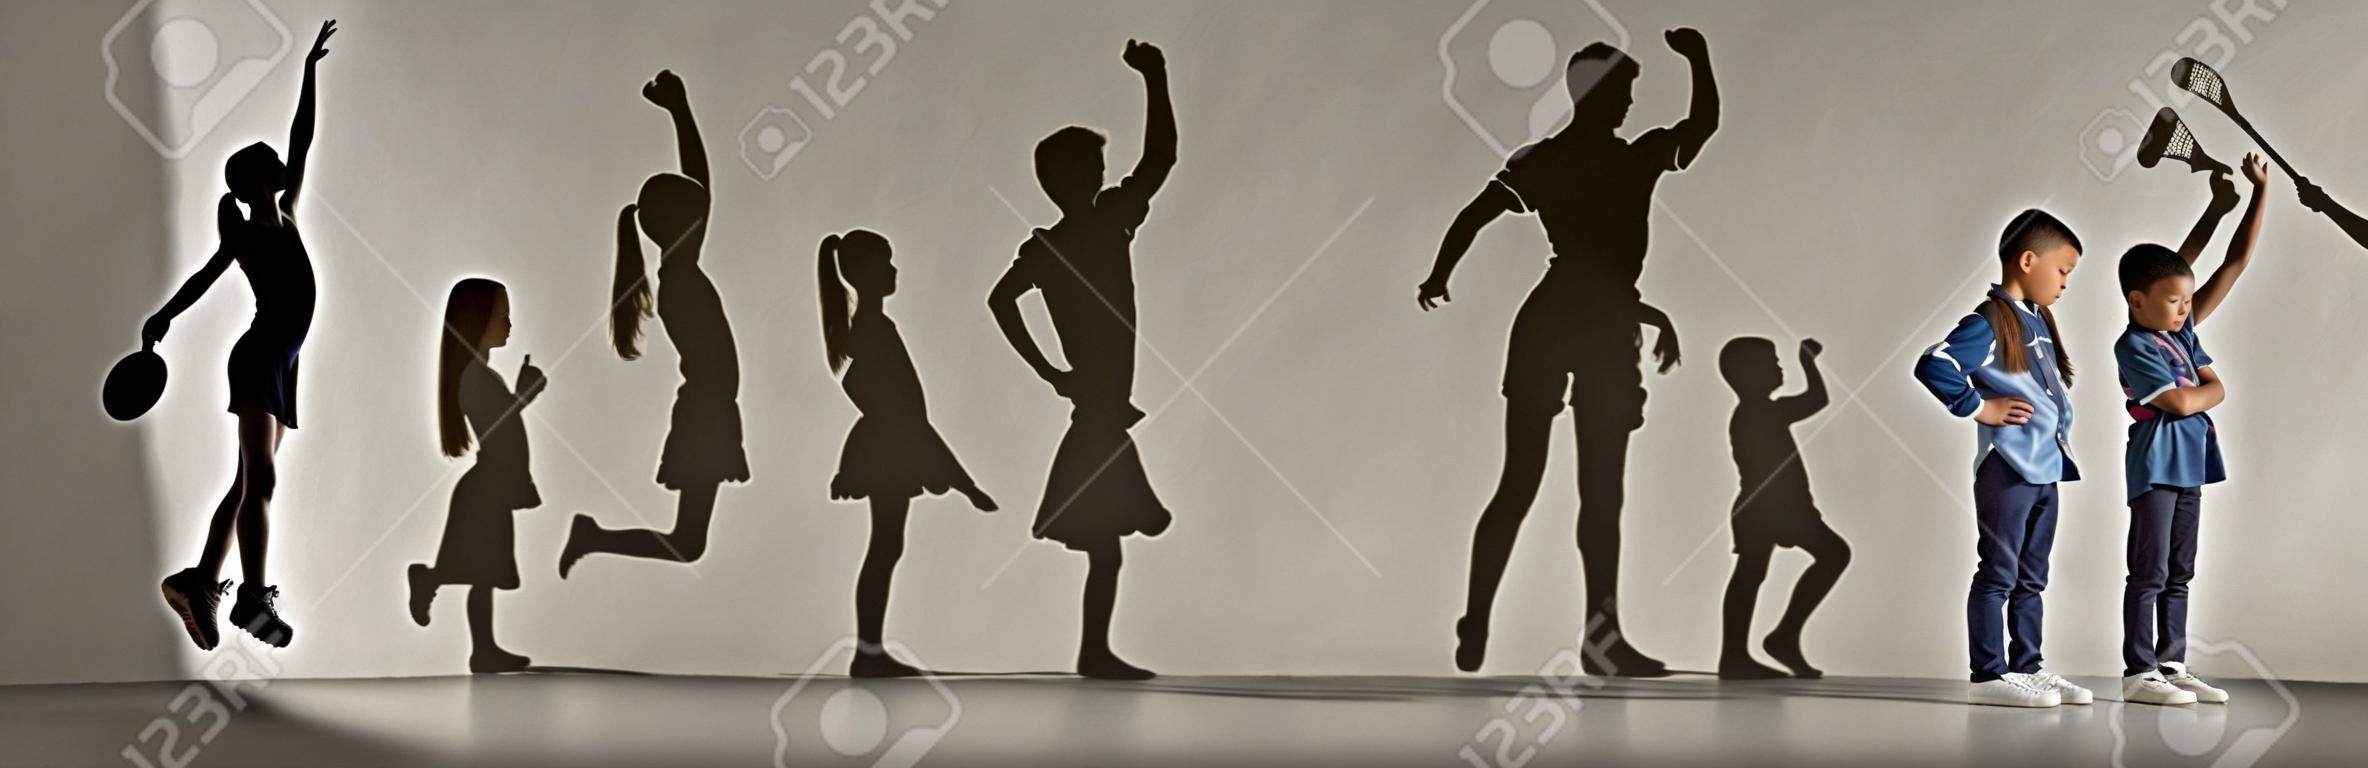 Kindheit und Traum von einer großen und berühmten Zukunft. Konzeptionelles Bild mit Jungen und Mädchen und Schatten von fitten Athleten, Hockeyspielern, Bodybuildern, Ballerinas. Kreative Collage aus 2 Modellen.